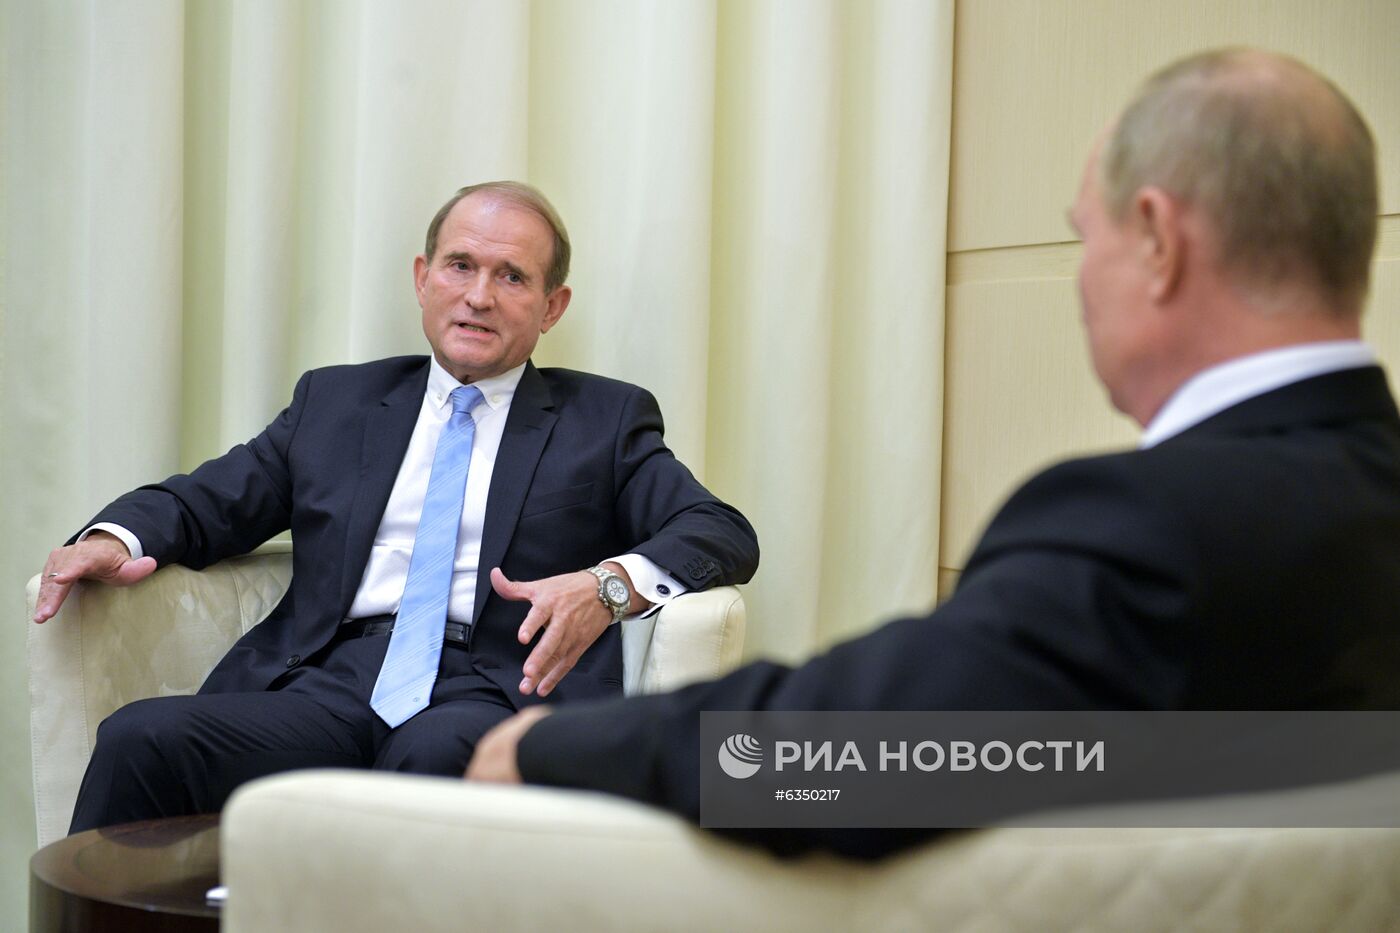 Президент РФ В. Путин провел встречу с председателем украинской партии В. Медведчуком